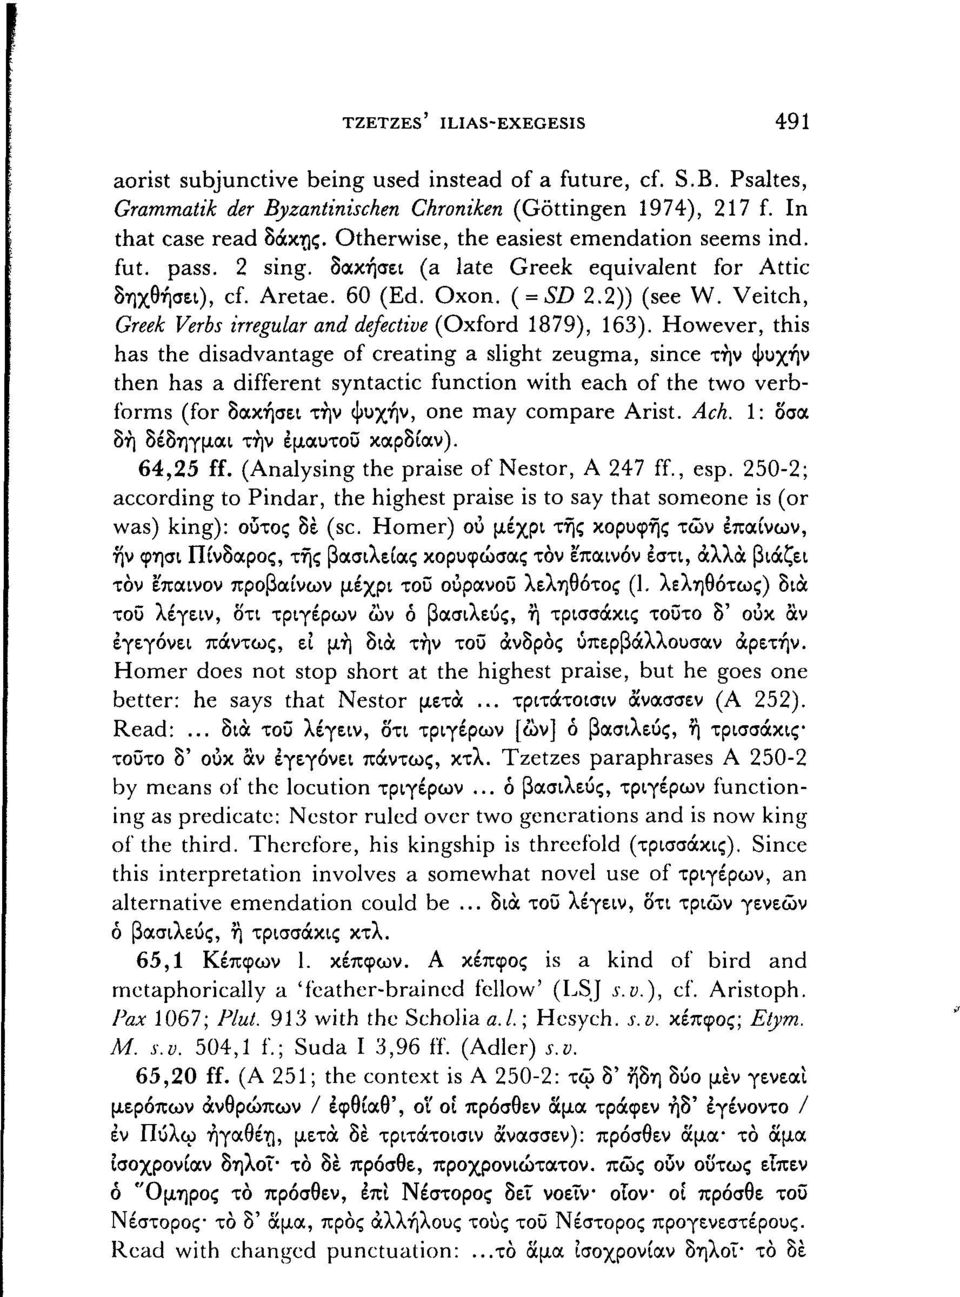 Veitch, Greek Verbs irregulär and defective (Oxford 1879), 163).